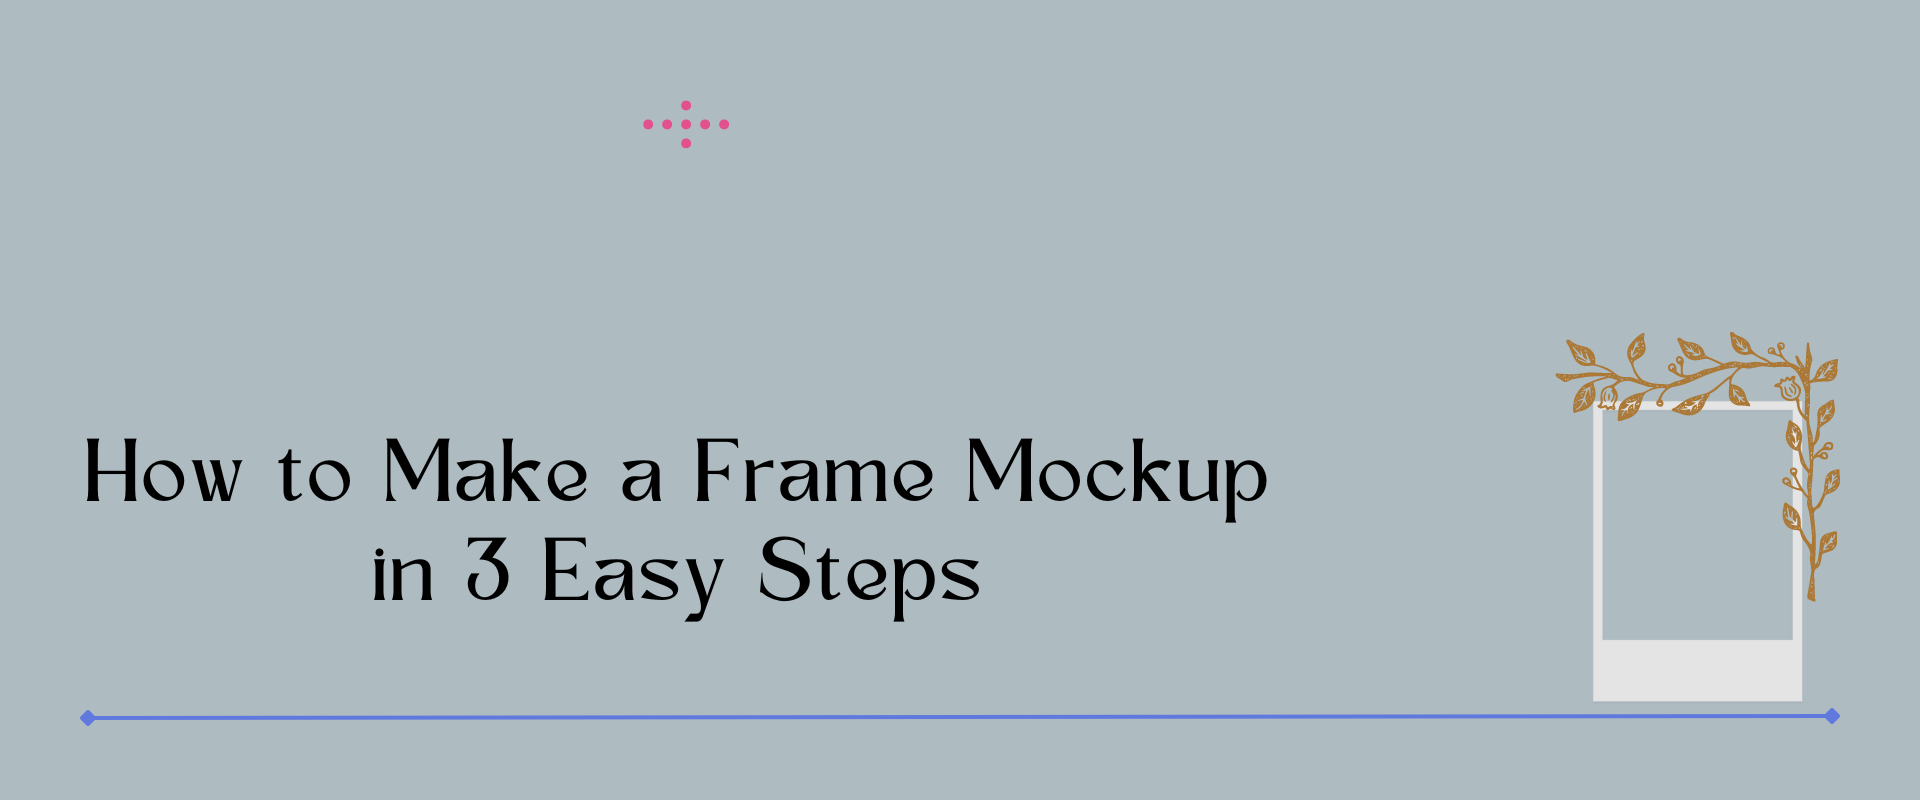 how to make a frame mockup